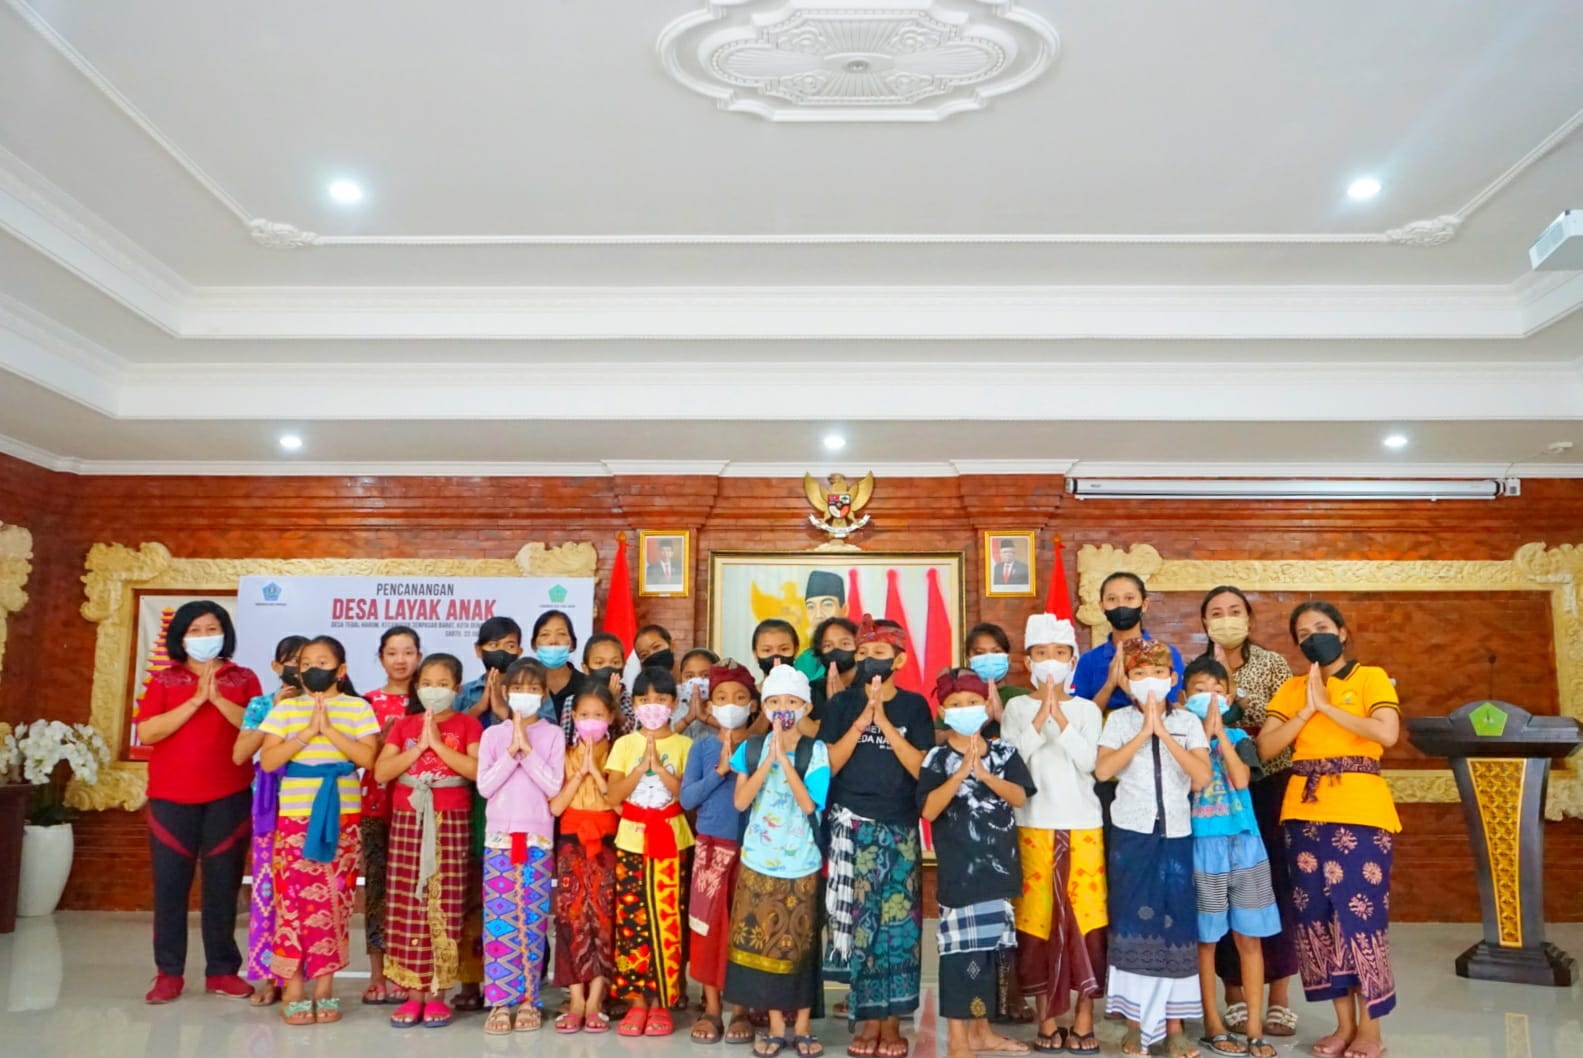 Pesraman Alit (Macecimpedan) Bahasa Bali Dalam Rangka Hari Anak Nasional Murid SD Kelas IV, V dan VI Sekolah Dasar